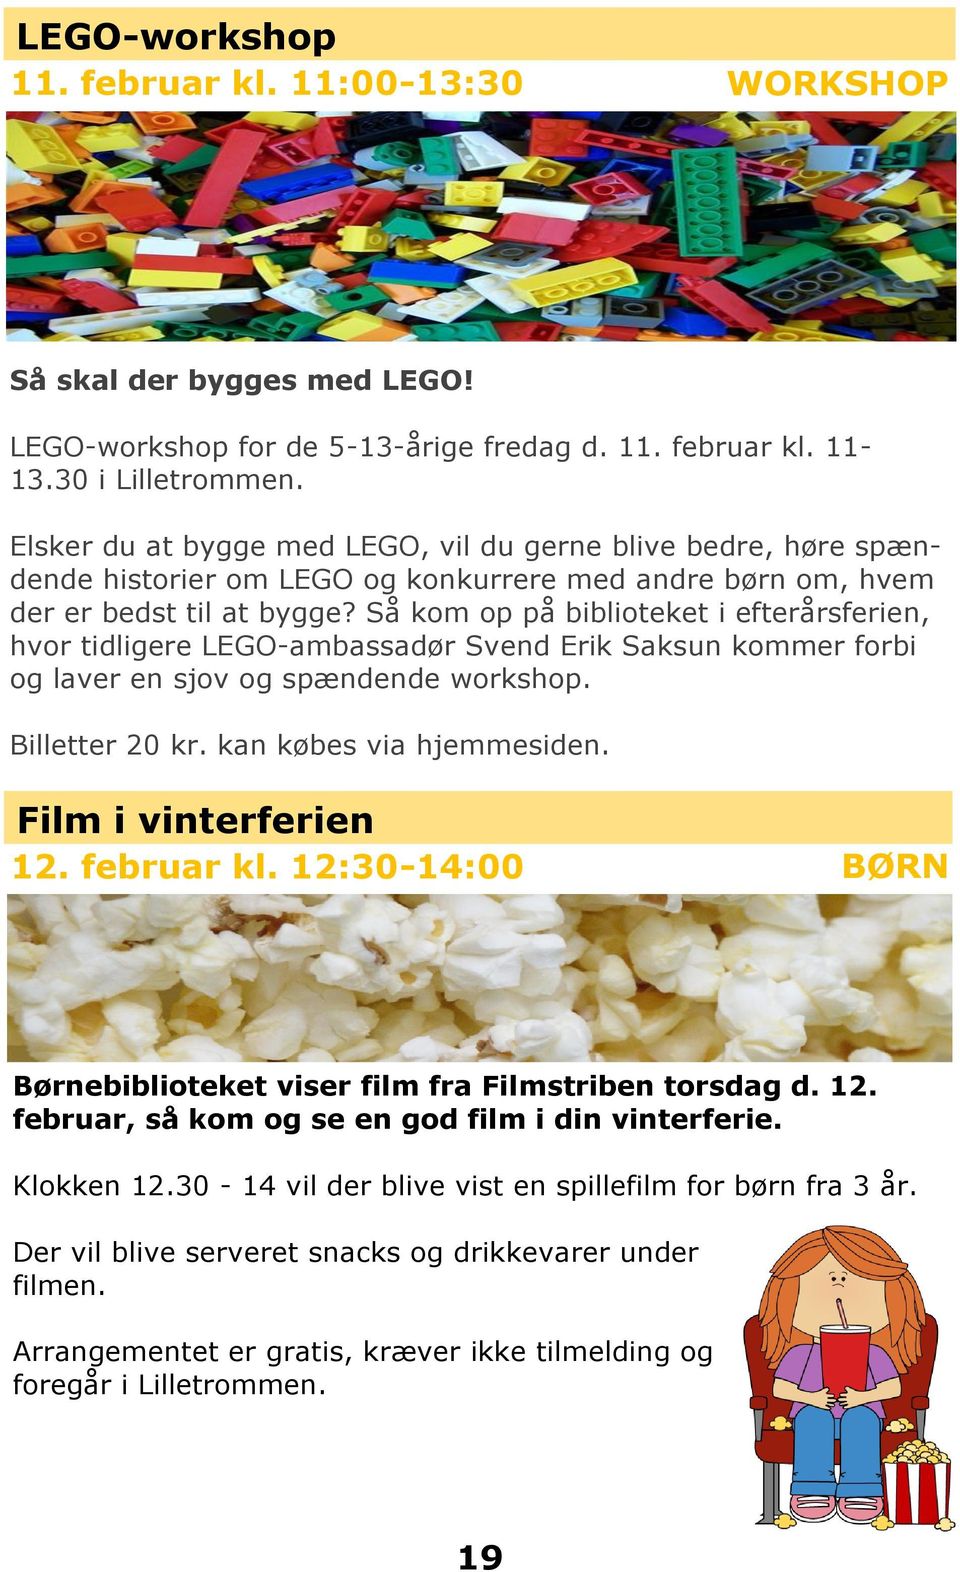 Så kom op på biblioteket i efterårsferien, hvor tidligere LEGO-ambassadør Svend Erik Saksun kommer forbi og laver en sjov og spændende workshop. Billetter 20 kr. kan købes via hjemmesiden.